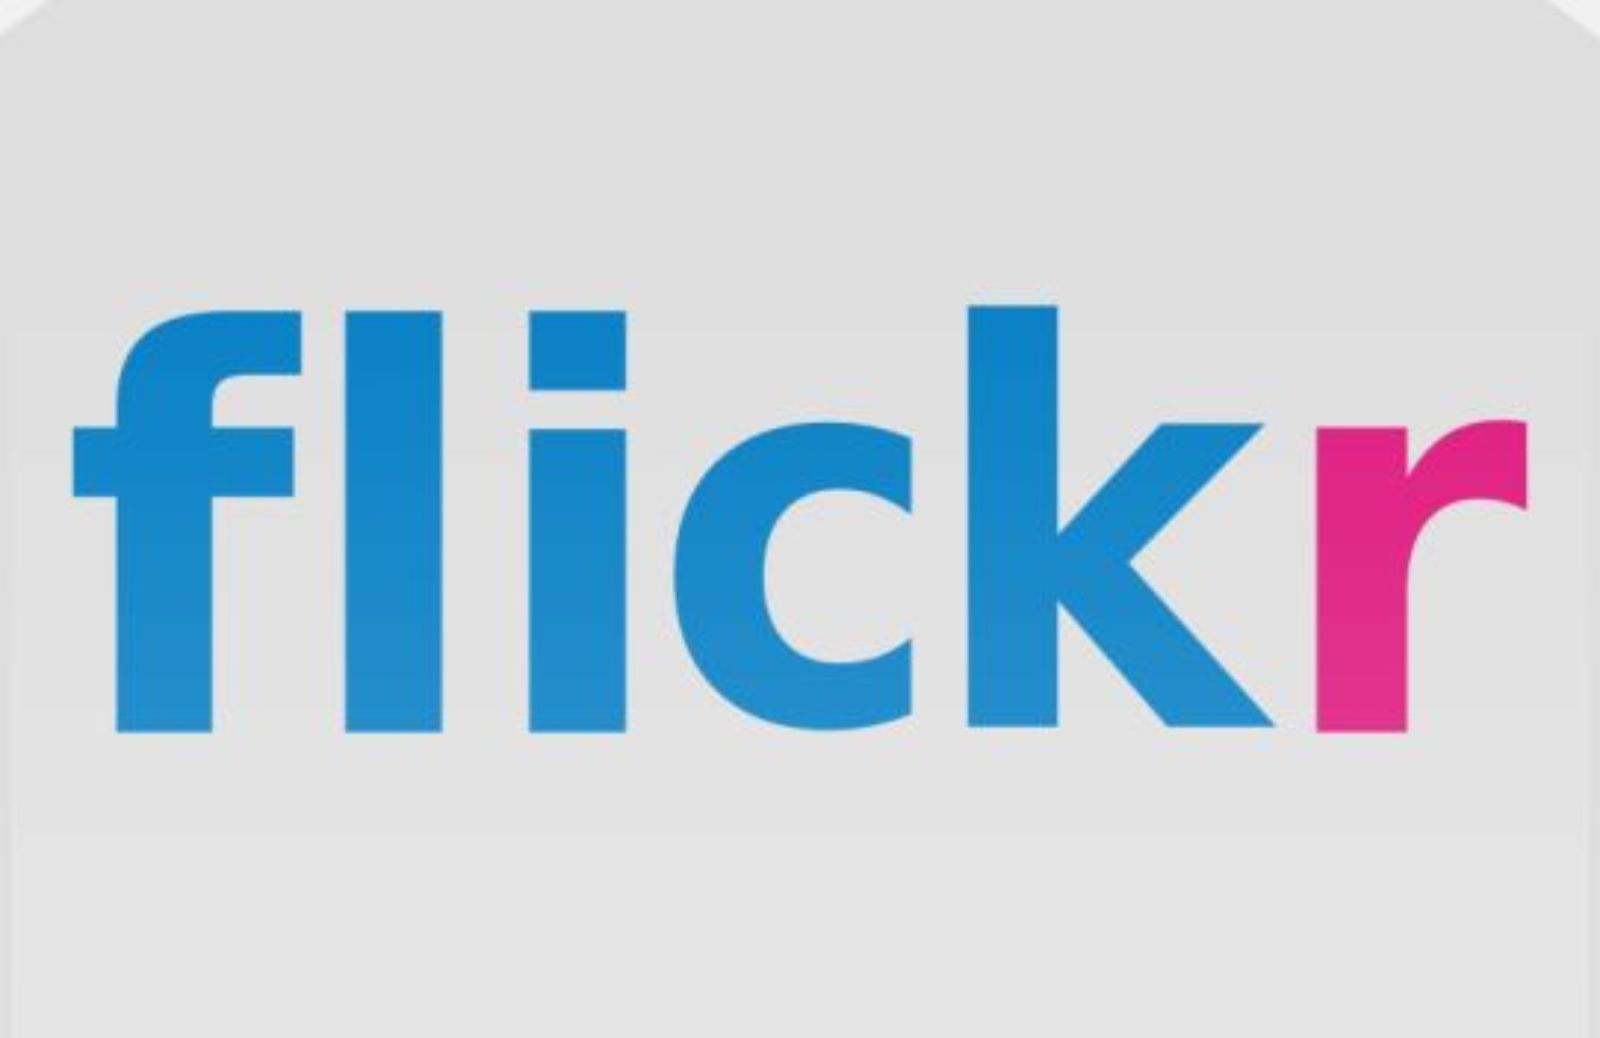 Come funziona Flickr